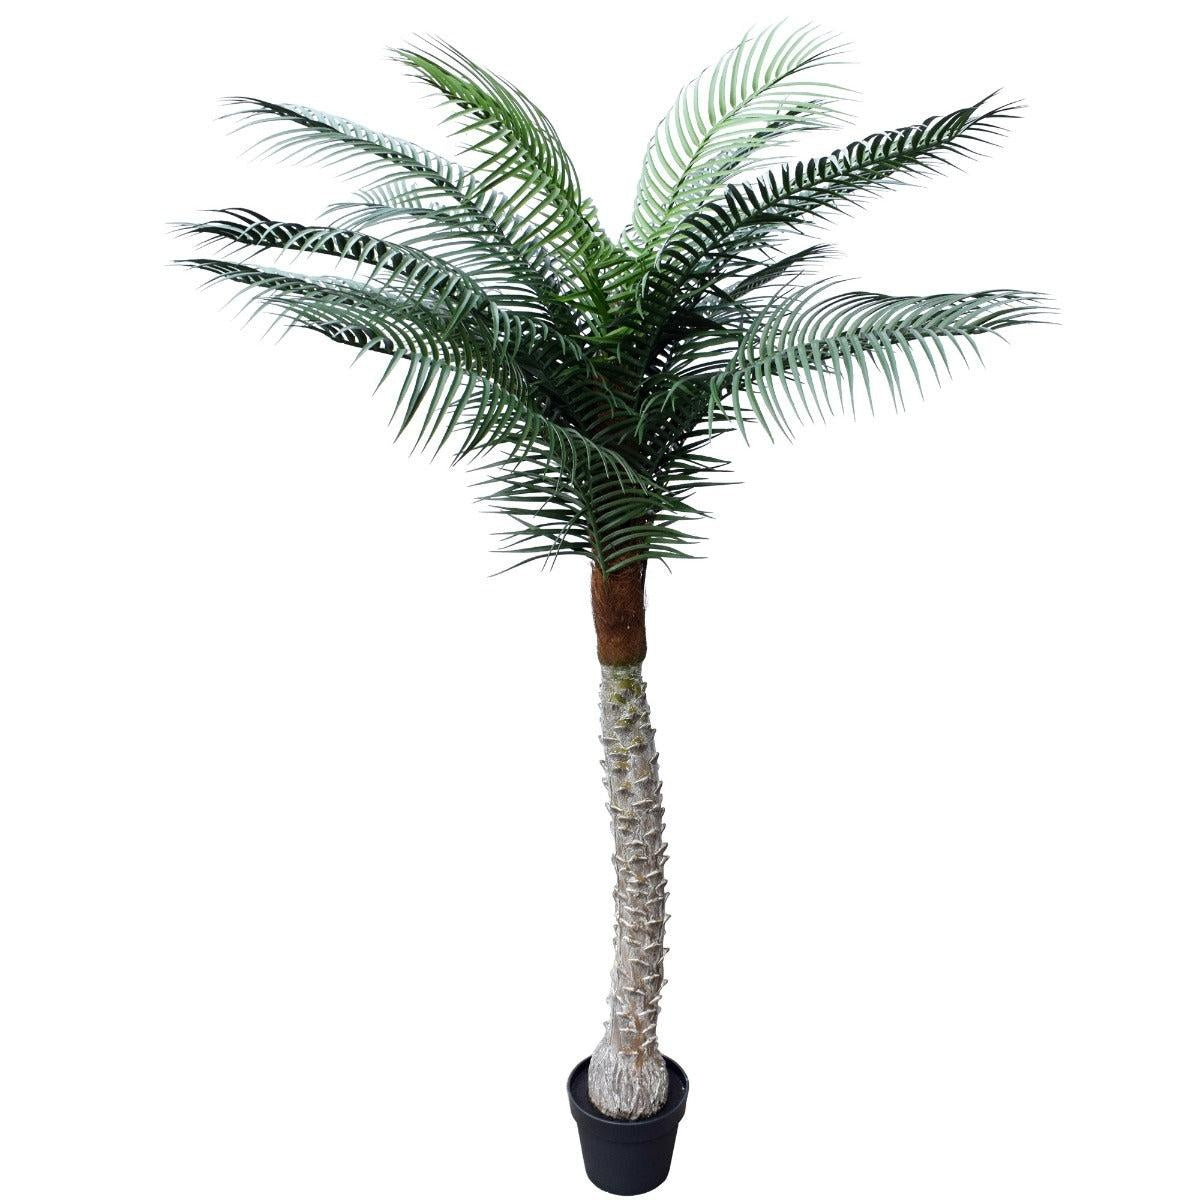 Tropical Phoenix Palm Tree 170cm UV Resistant Deals499